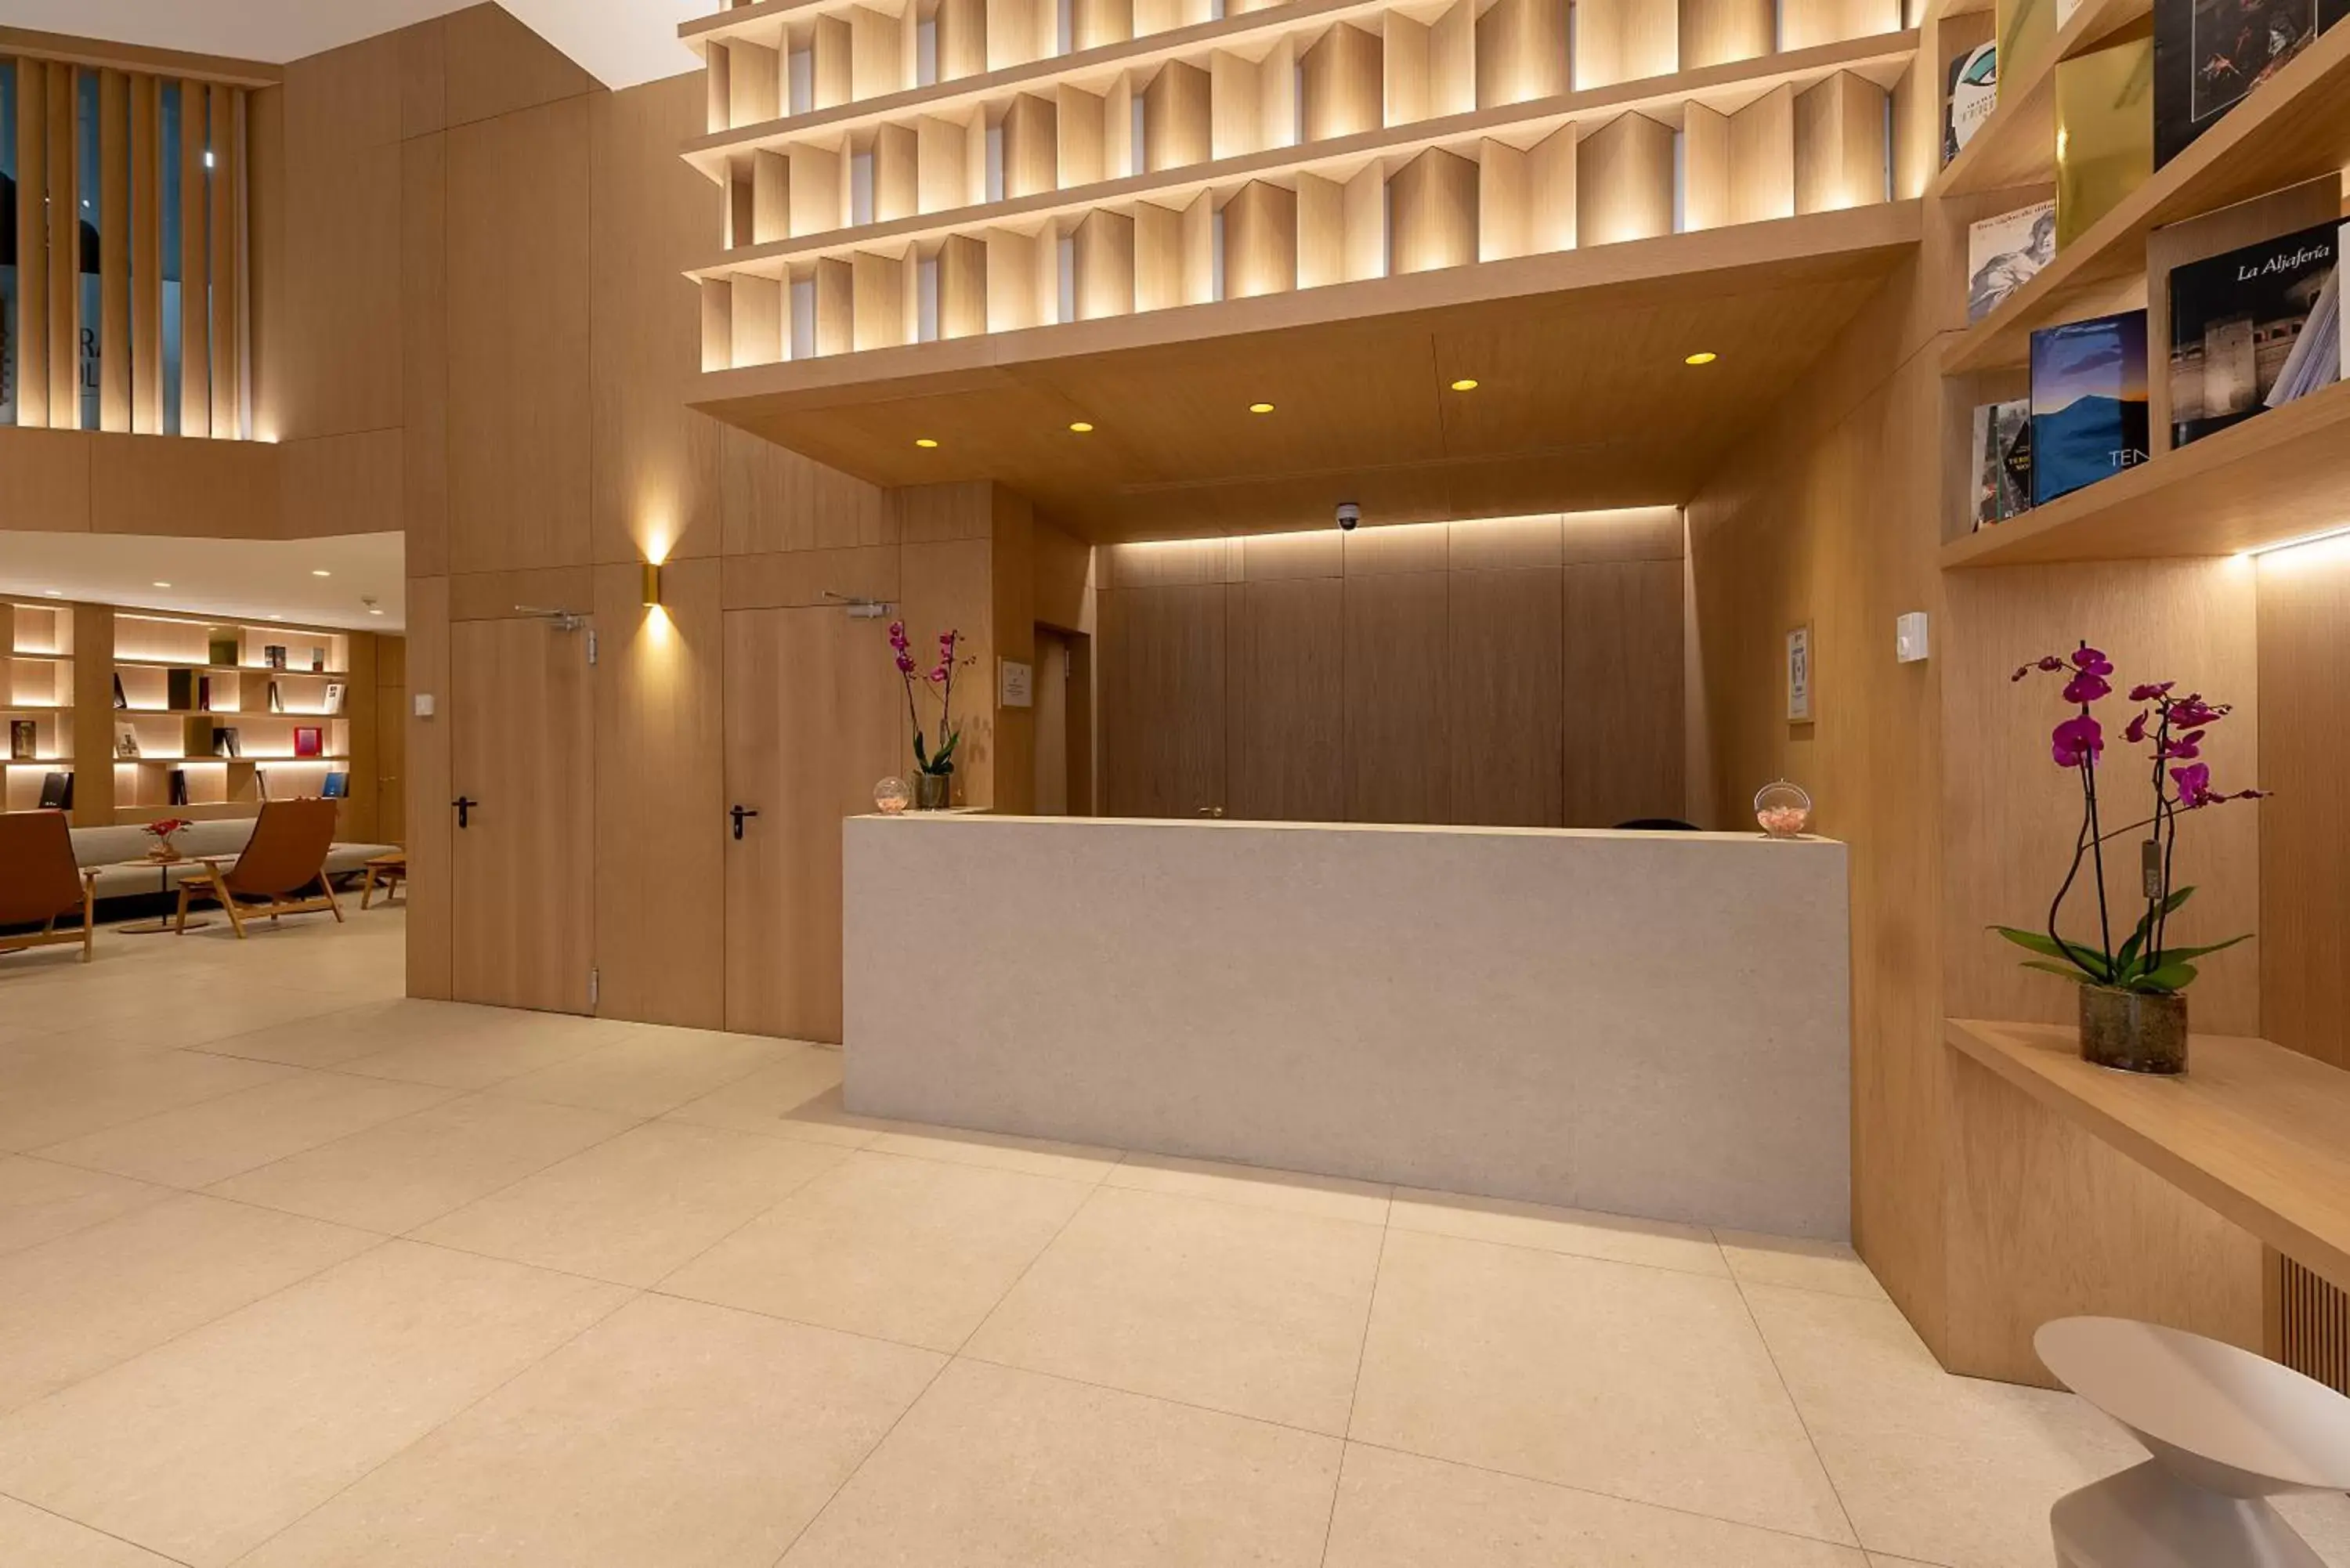 Lobby or reception, Lobby/Reception in Apartamentos Recoletos